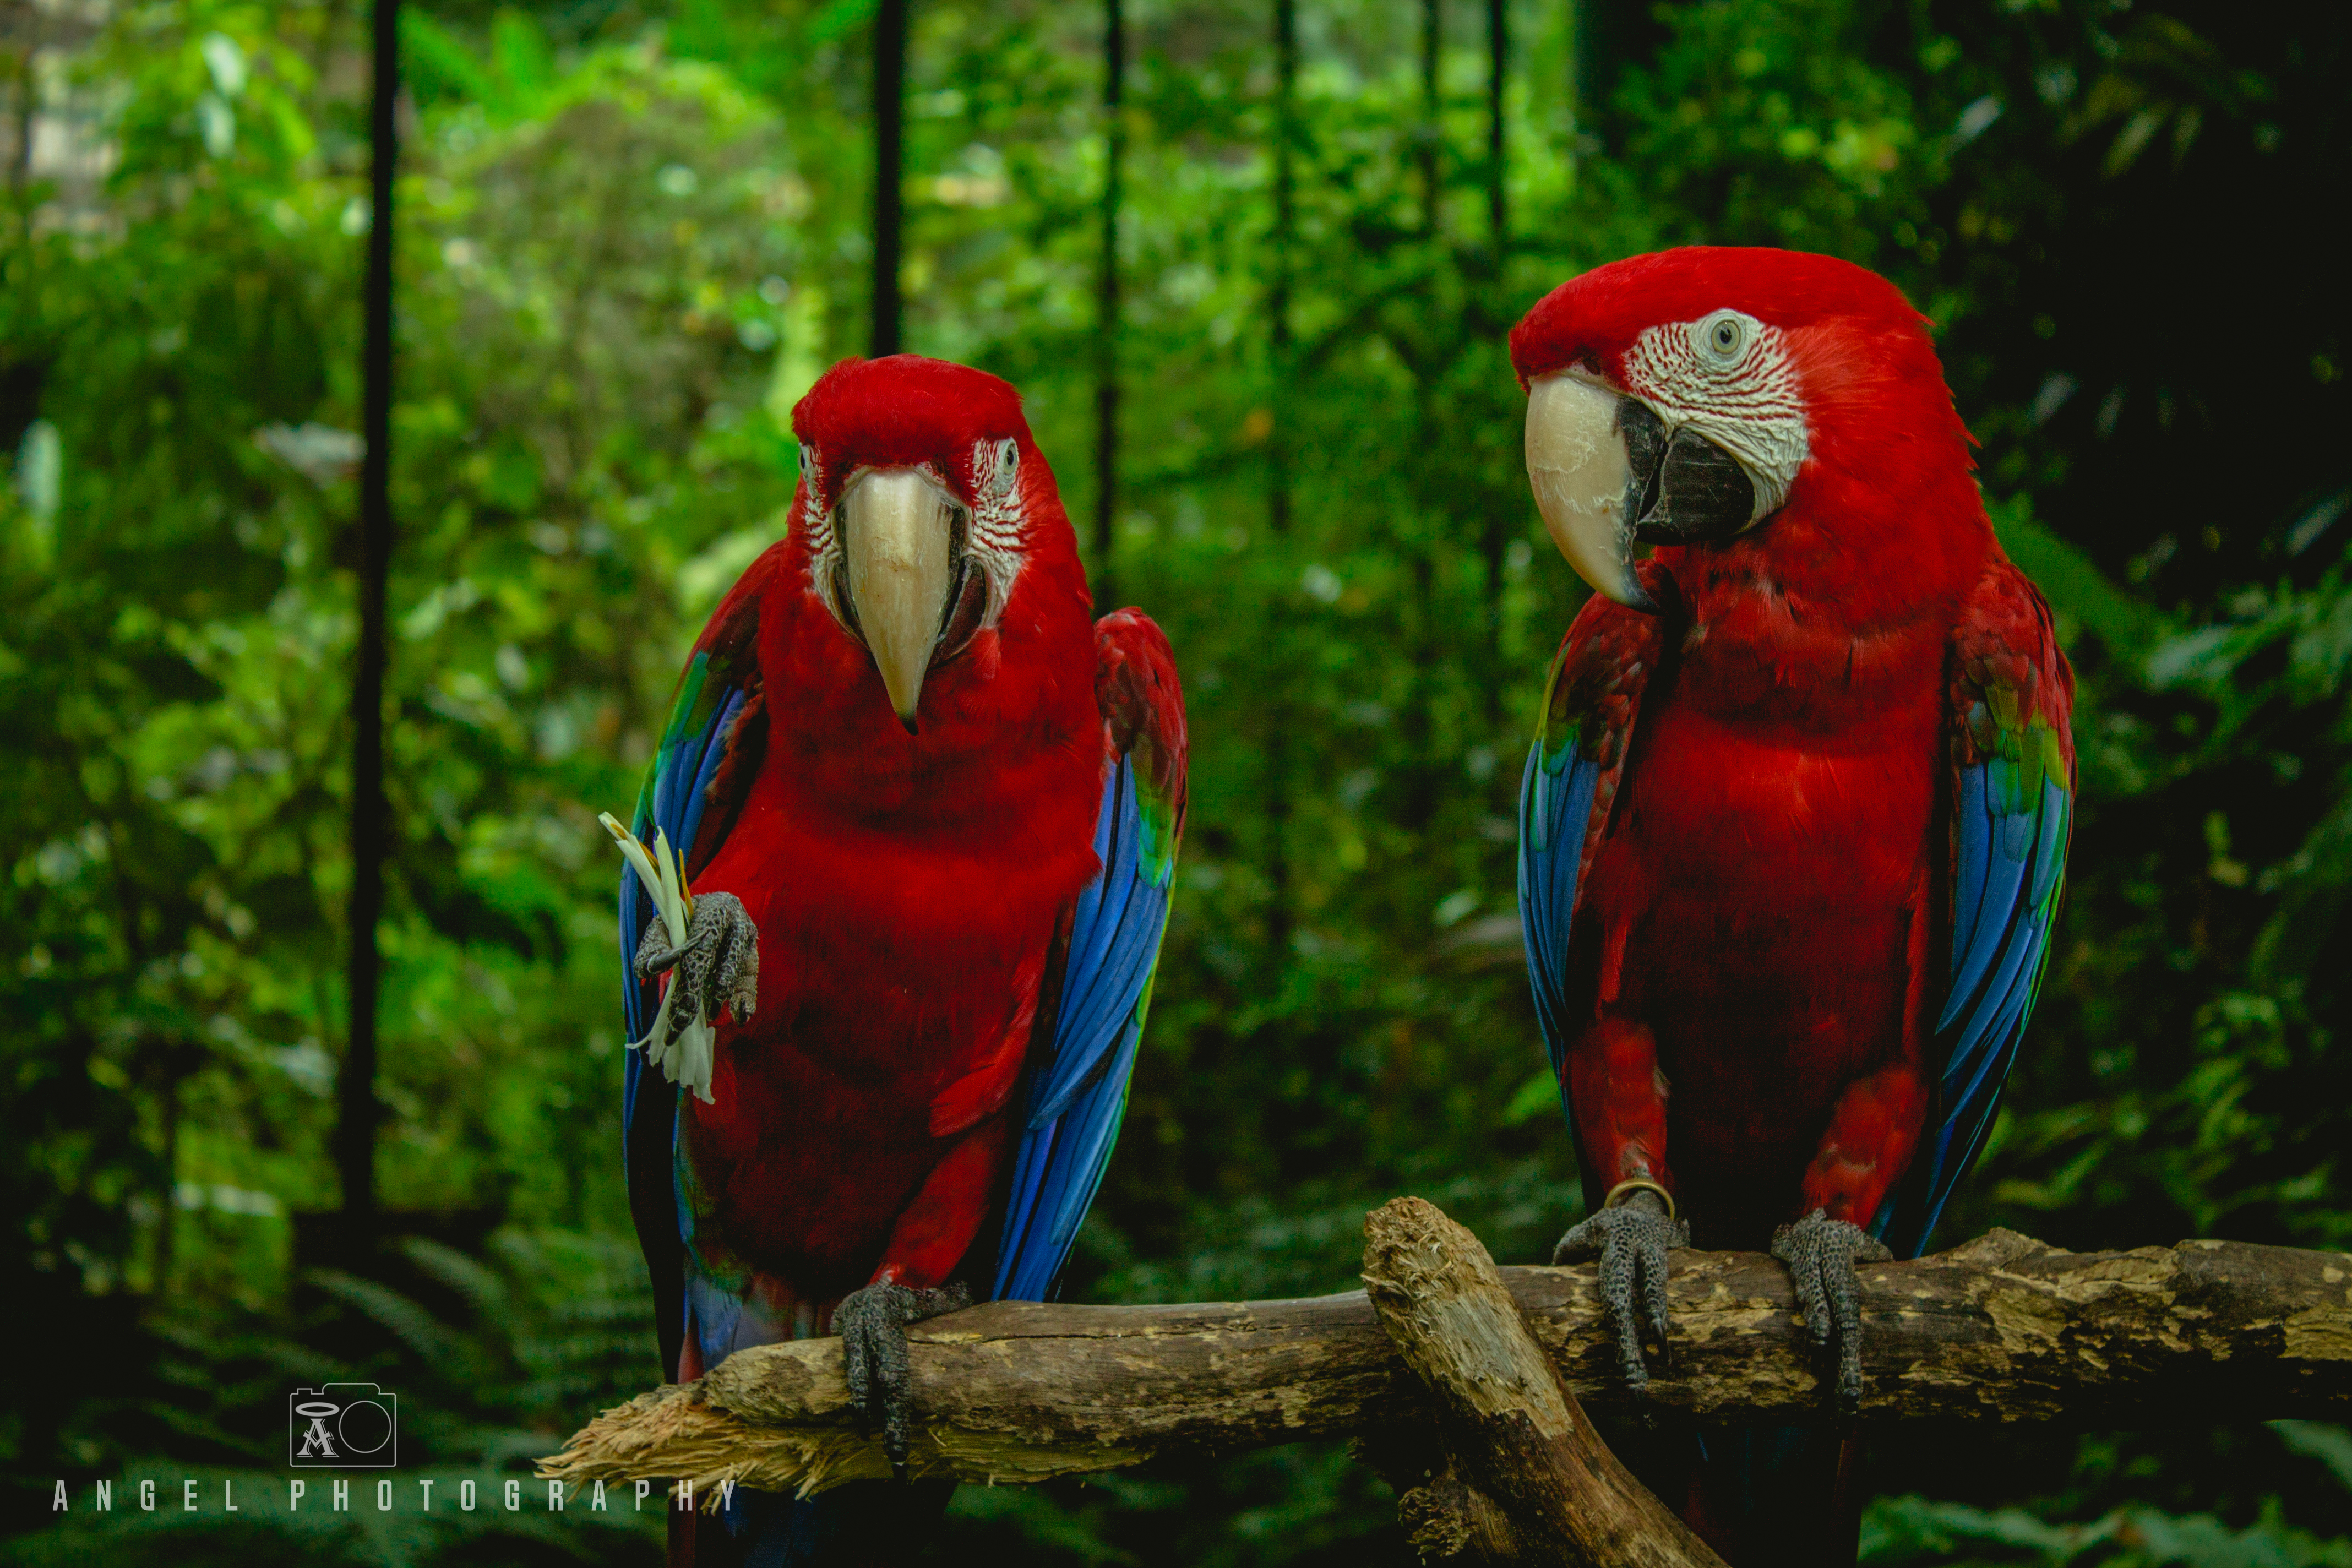 Singapore Zoo, Red Parrot, Singapore Day Tour, Wild Life